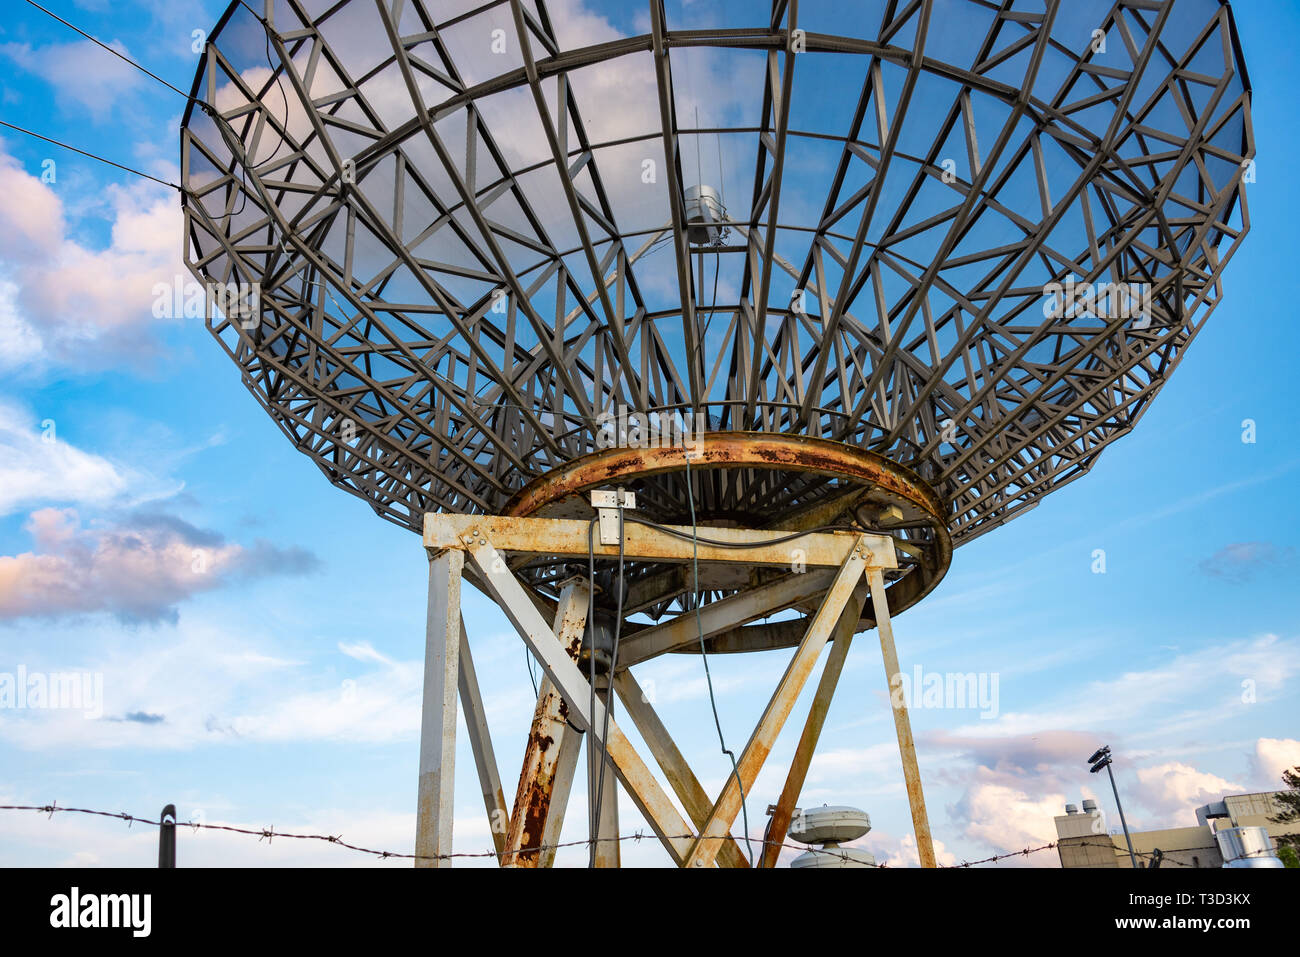 Antenne satellite de 25 pieds à l'Université Emory à Atlanta, Géorgie, utilisé comme un radiotélescope pour l'enseignement de la radioastronomie au niveau du premier cycle. Banque D'Images